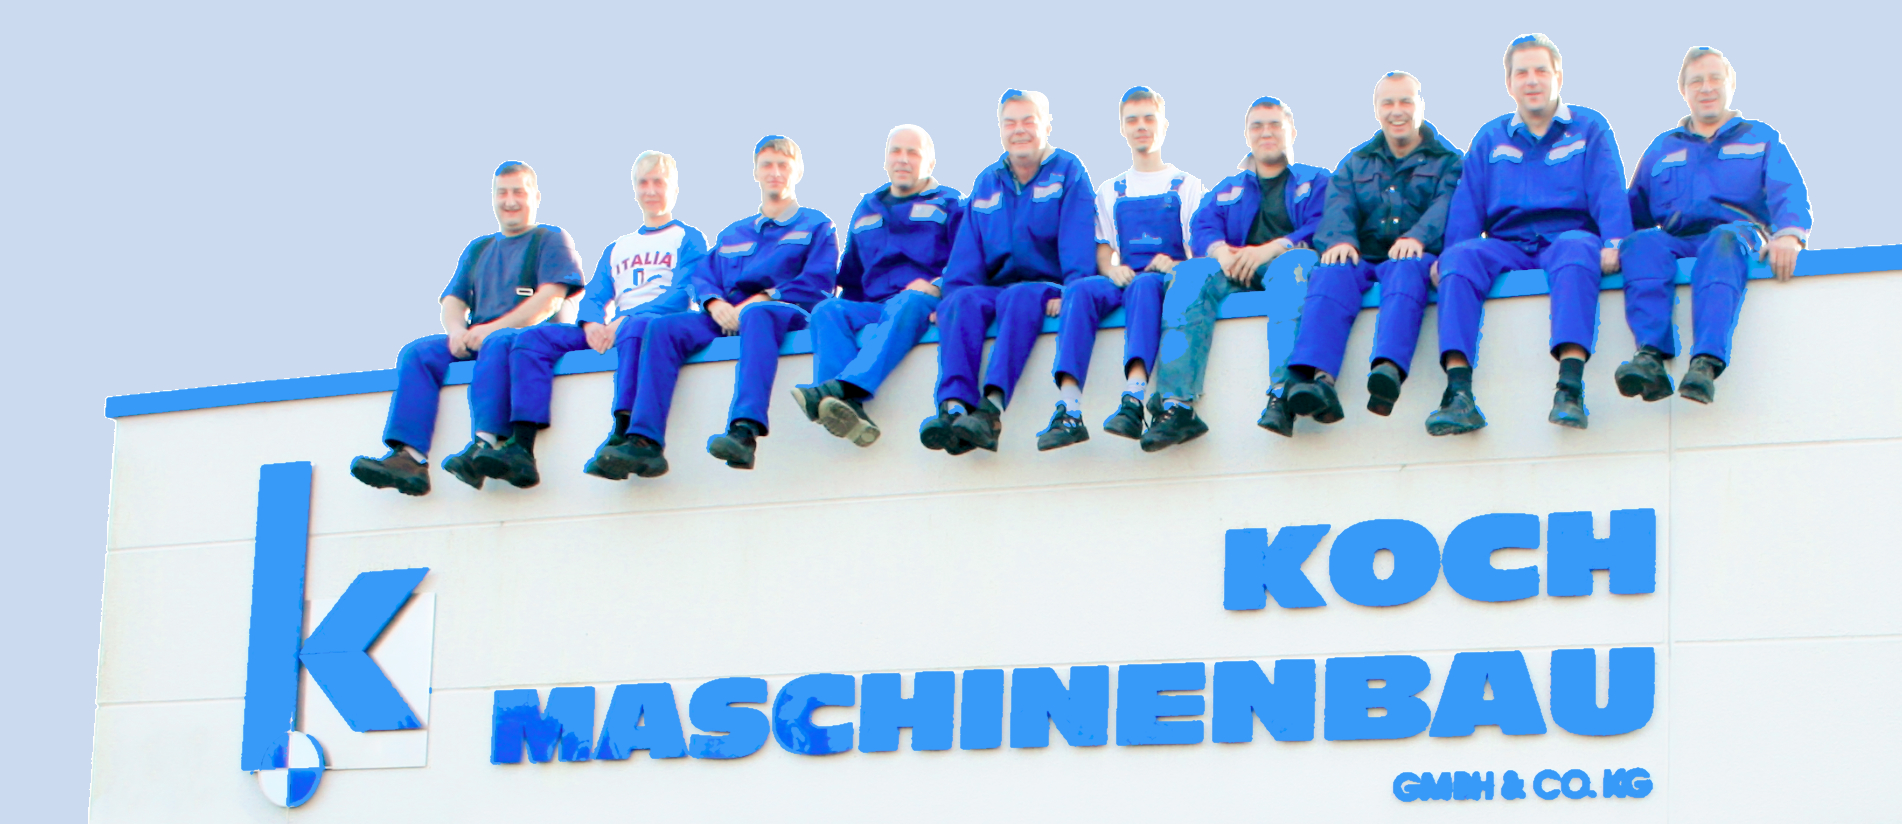 Koch Maschinenbau GmbH & Co KG, An der Hopfendarre 13 in Limbach-Oberfrohna